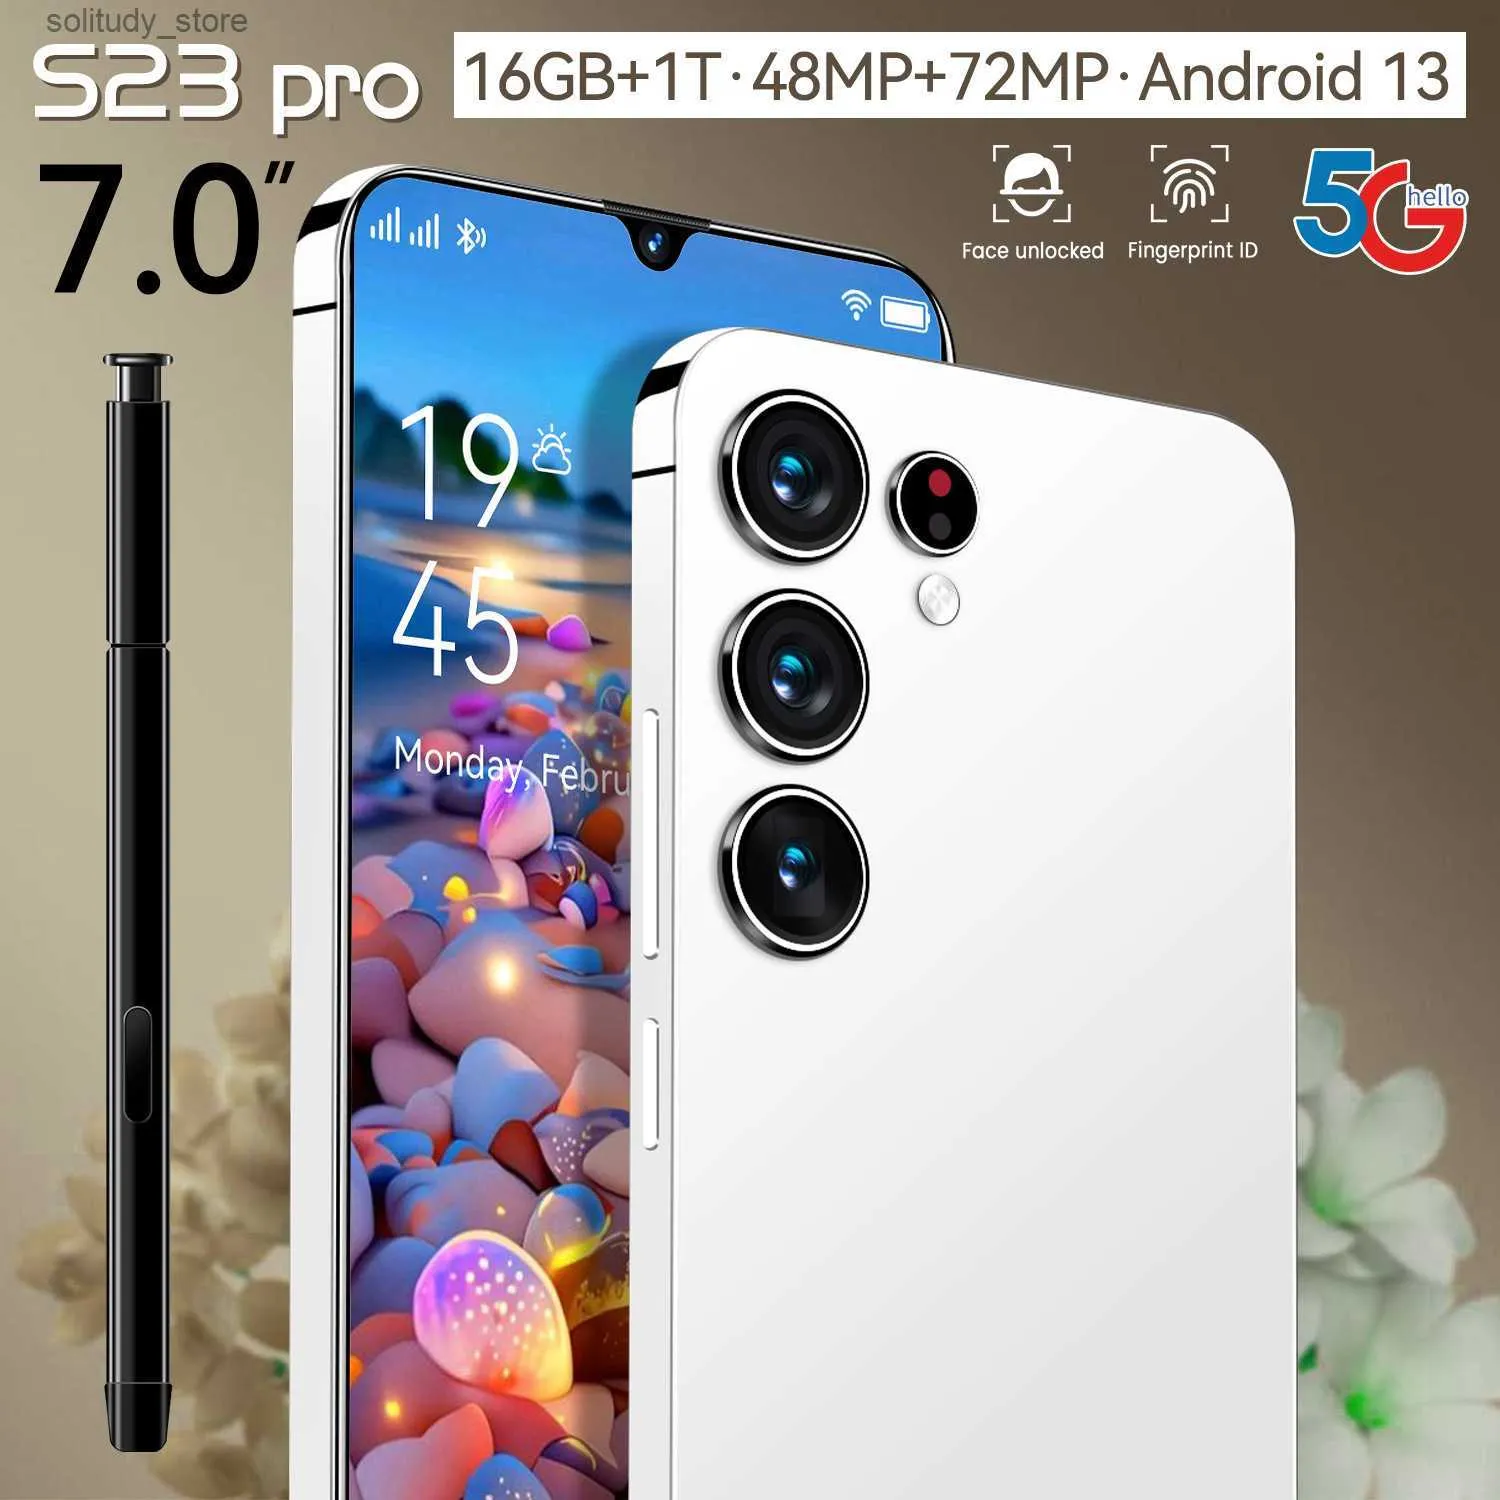 Telefono cellulare S23 Pro 7.0 "schermo grande (1+8) memoria all-in-one popolare smartphone Q240328